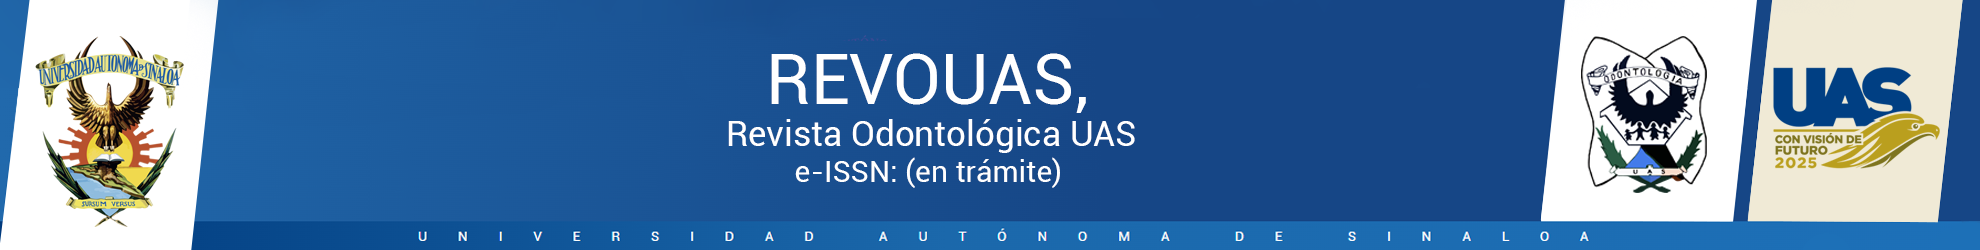 Logo REVOUAS, Revista Odontológica UAS